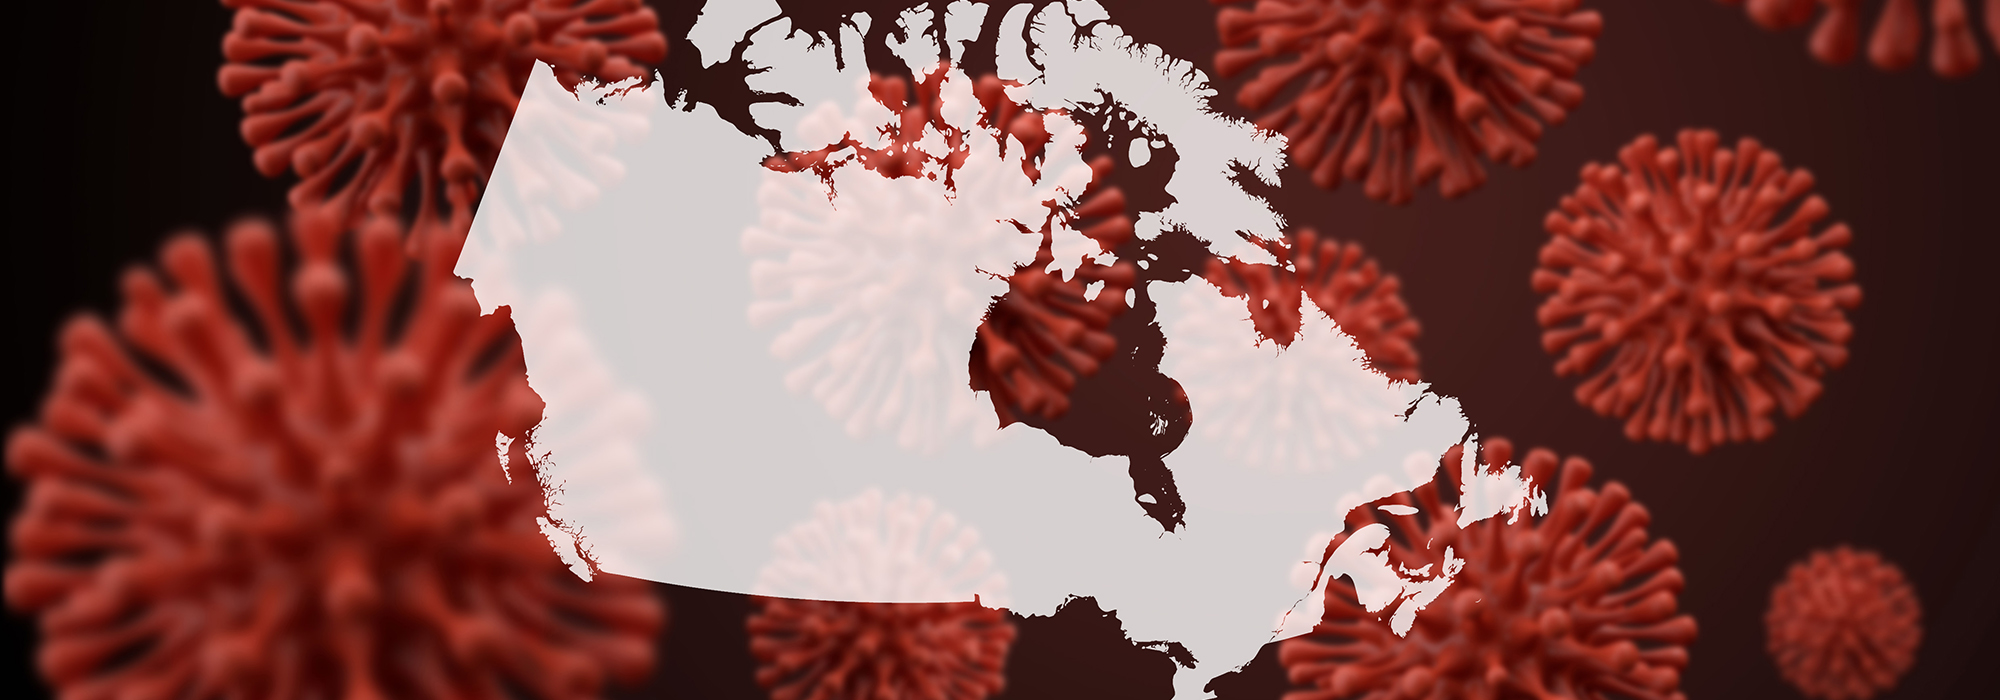 365 jours de données montrent que les provinces canadiennes ont utilisé des approches très différentes pour lutter contre la COVID-19